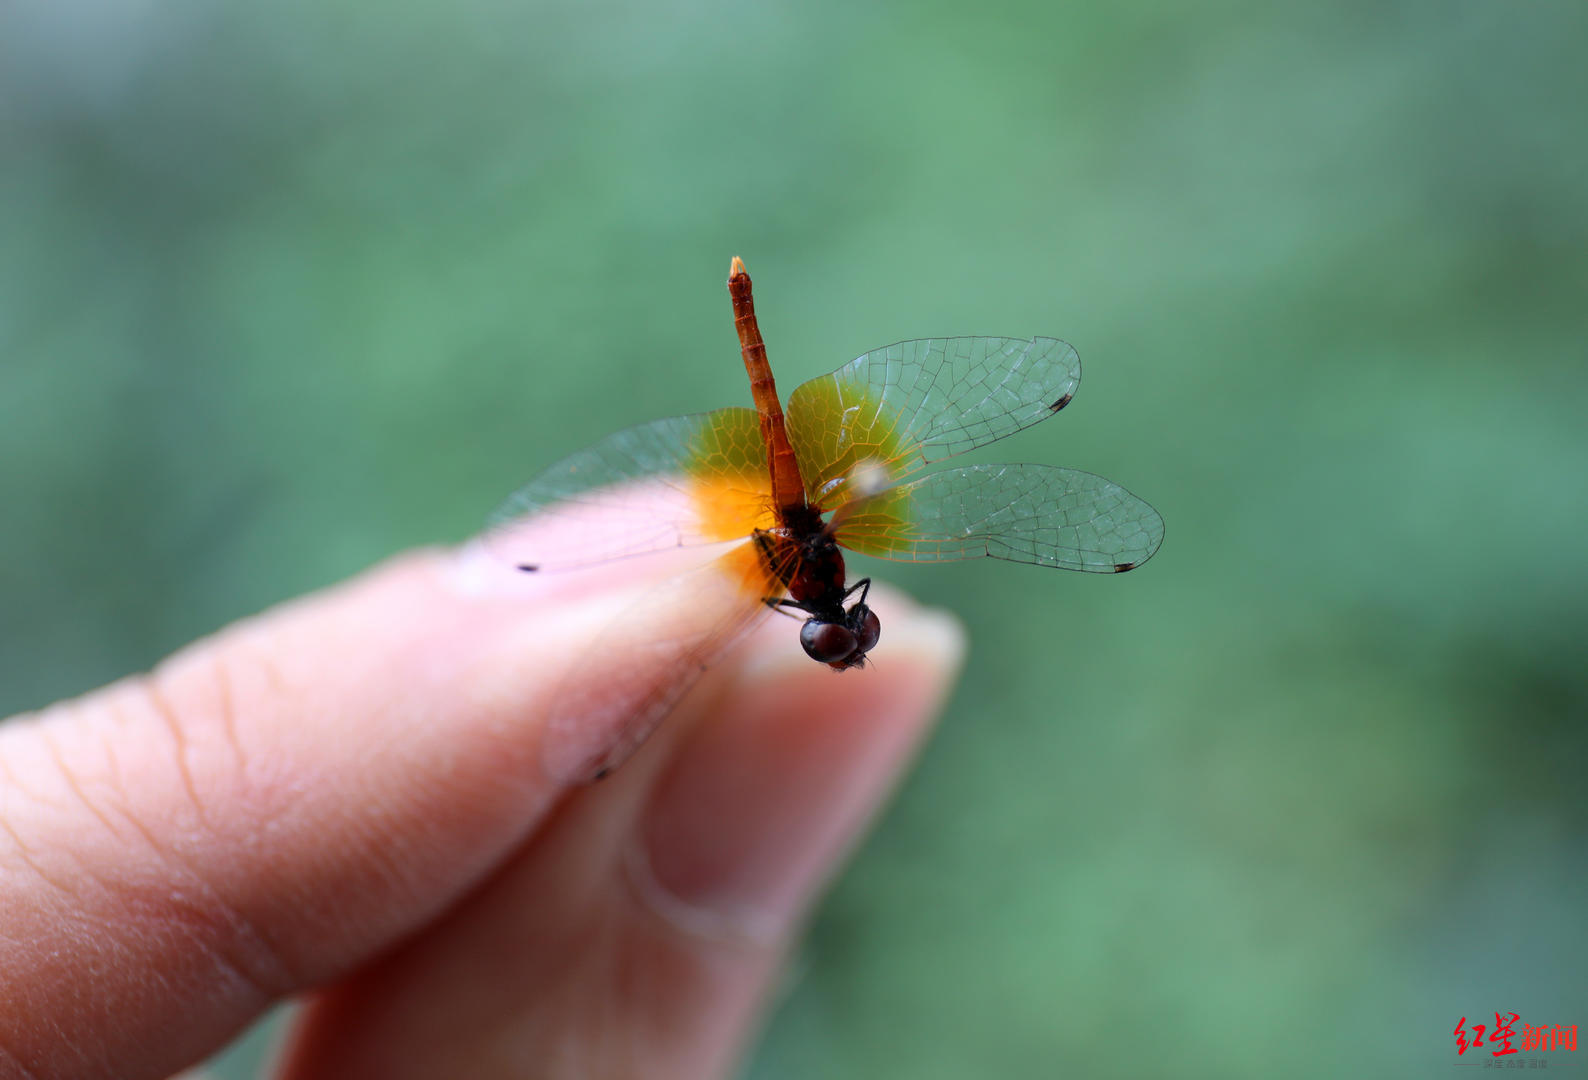 这个"丁丁猫"体长不足15毫米!四川发现世界最小蜻蜓个体